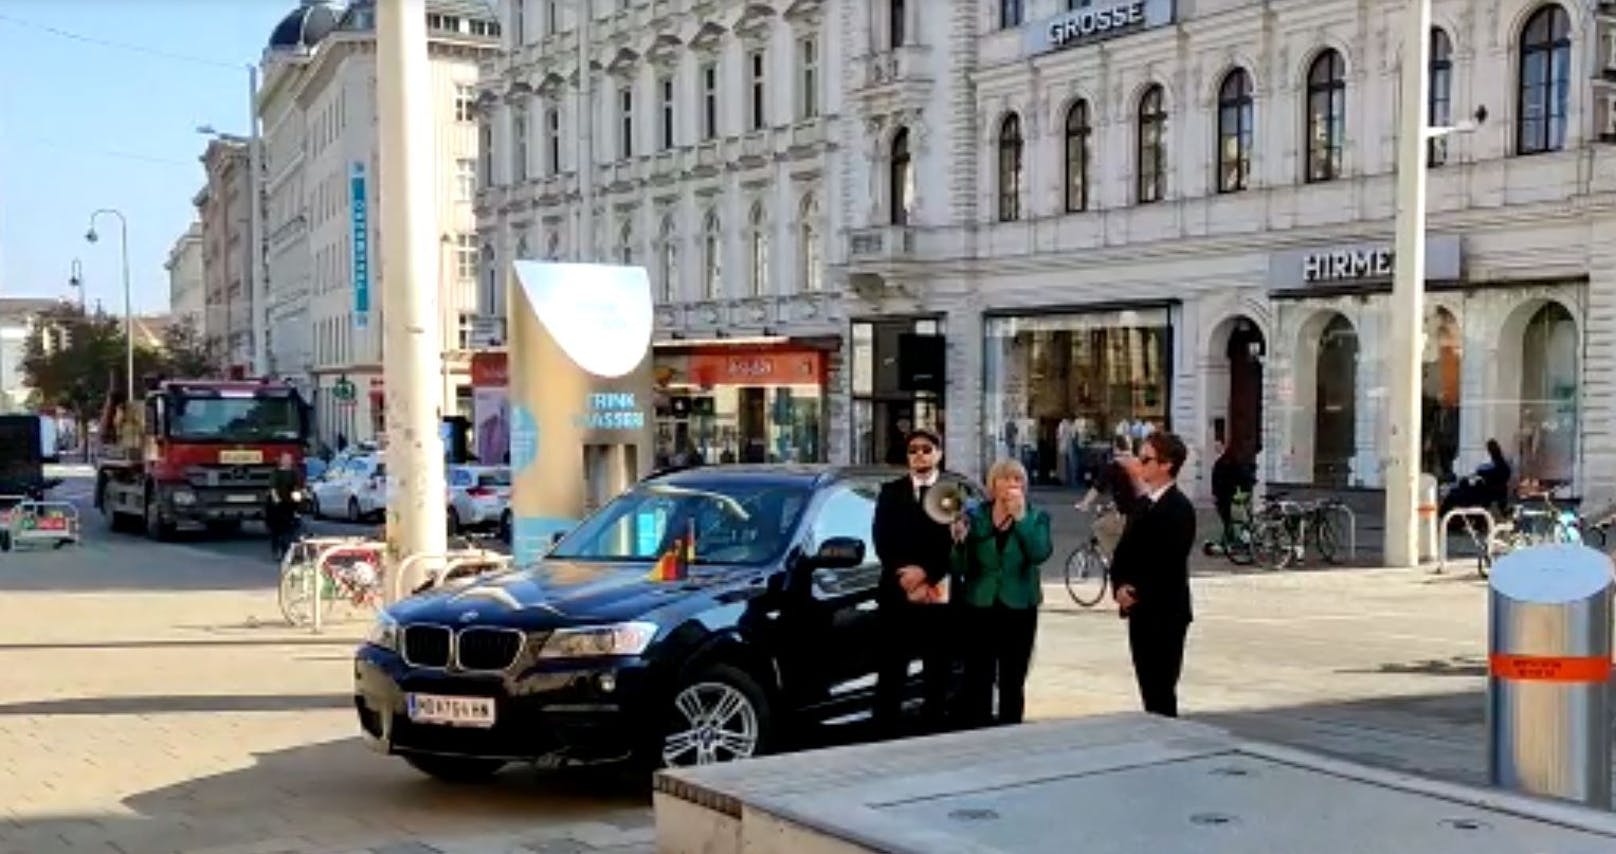 Skurrile Aktion: Merkel plötzlich mit Megaphon in Wien